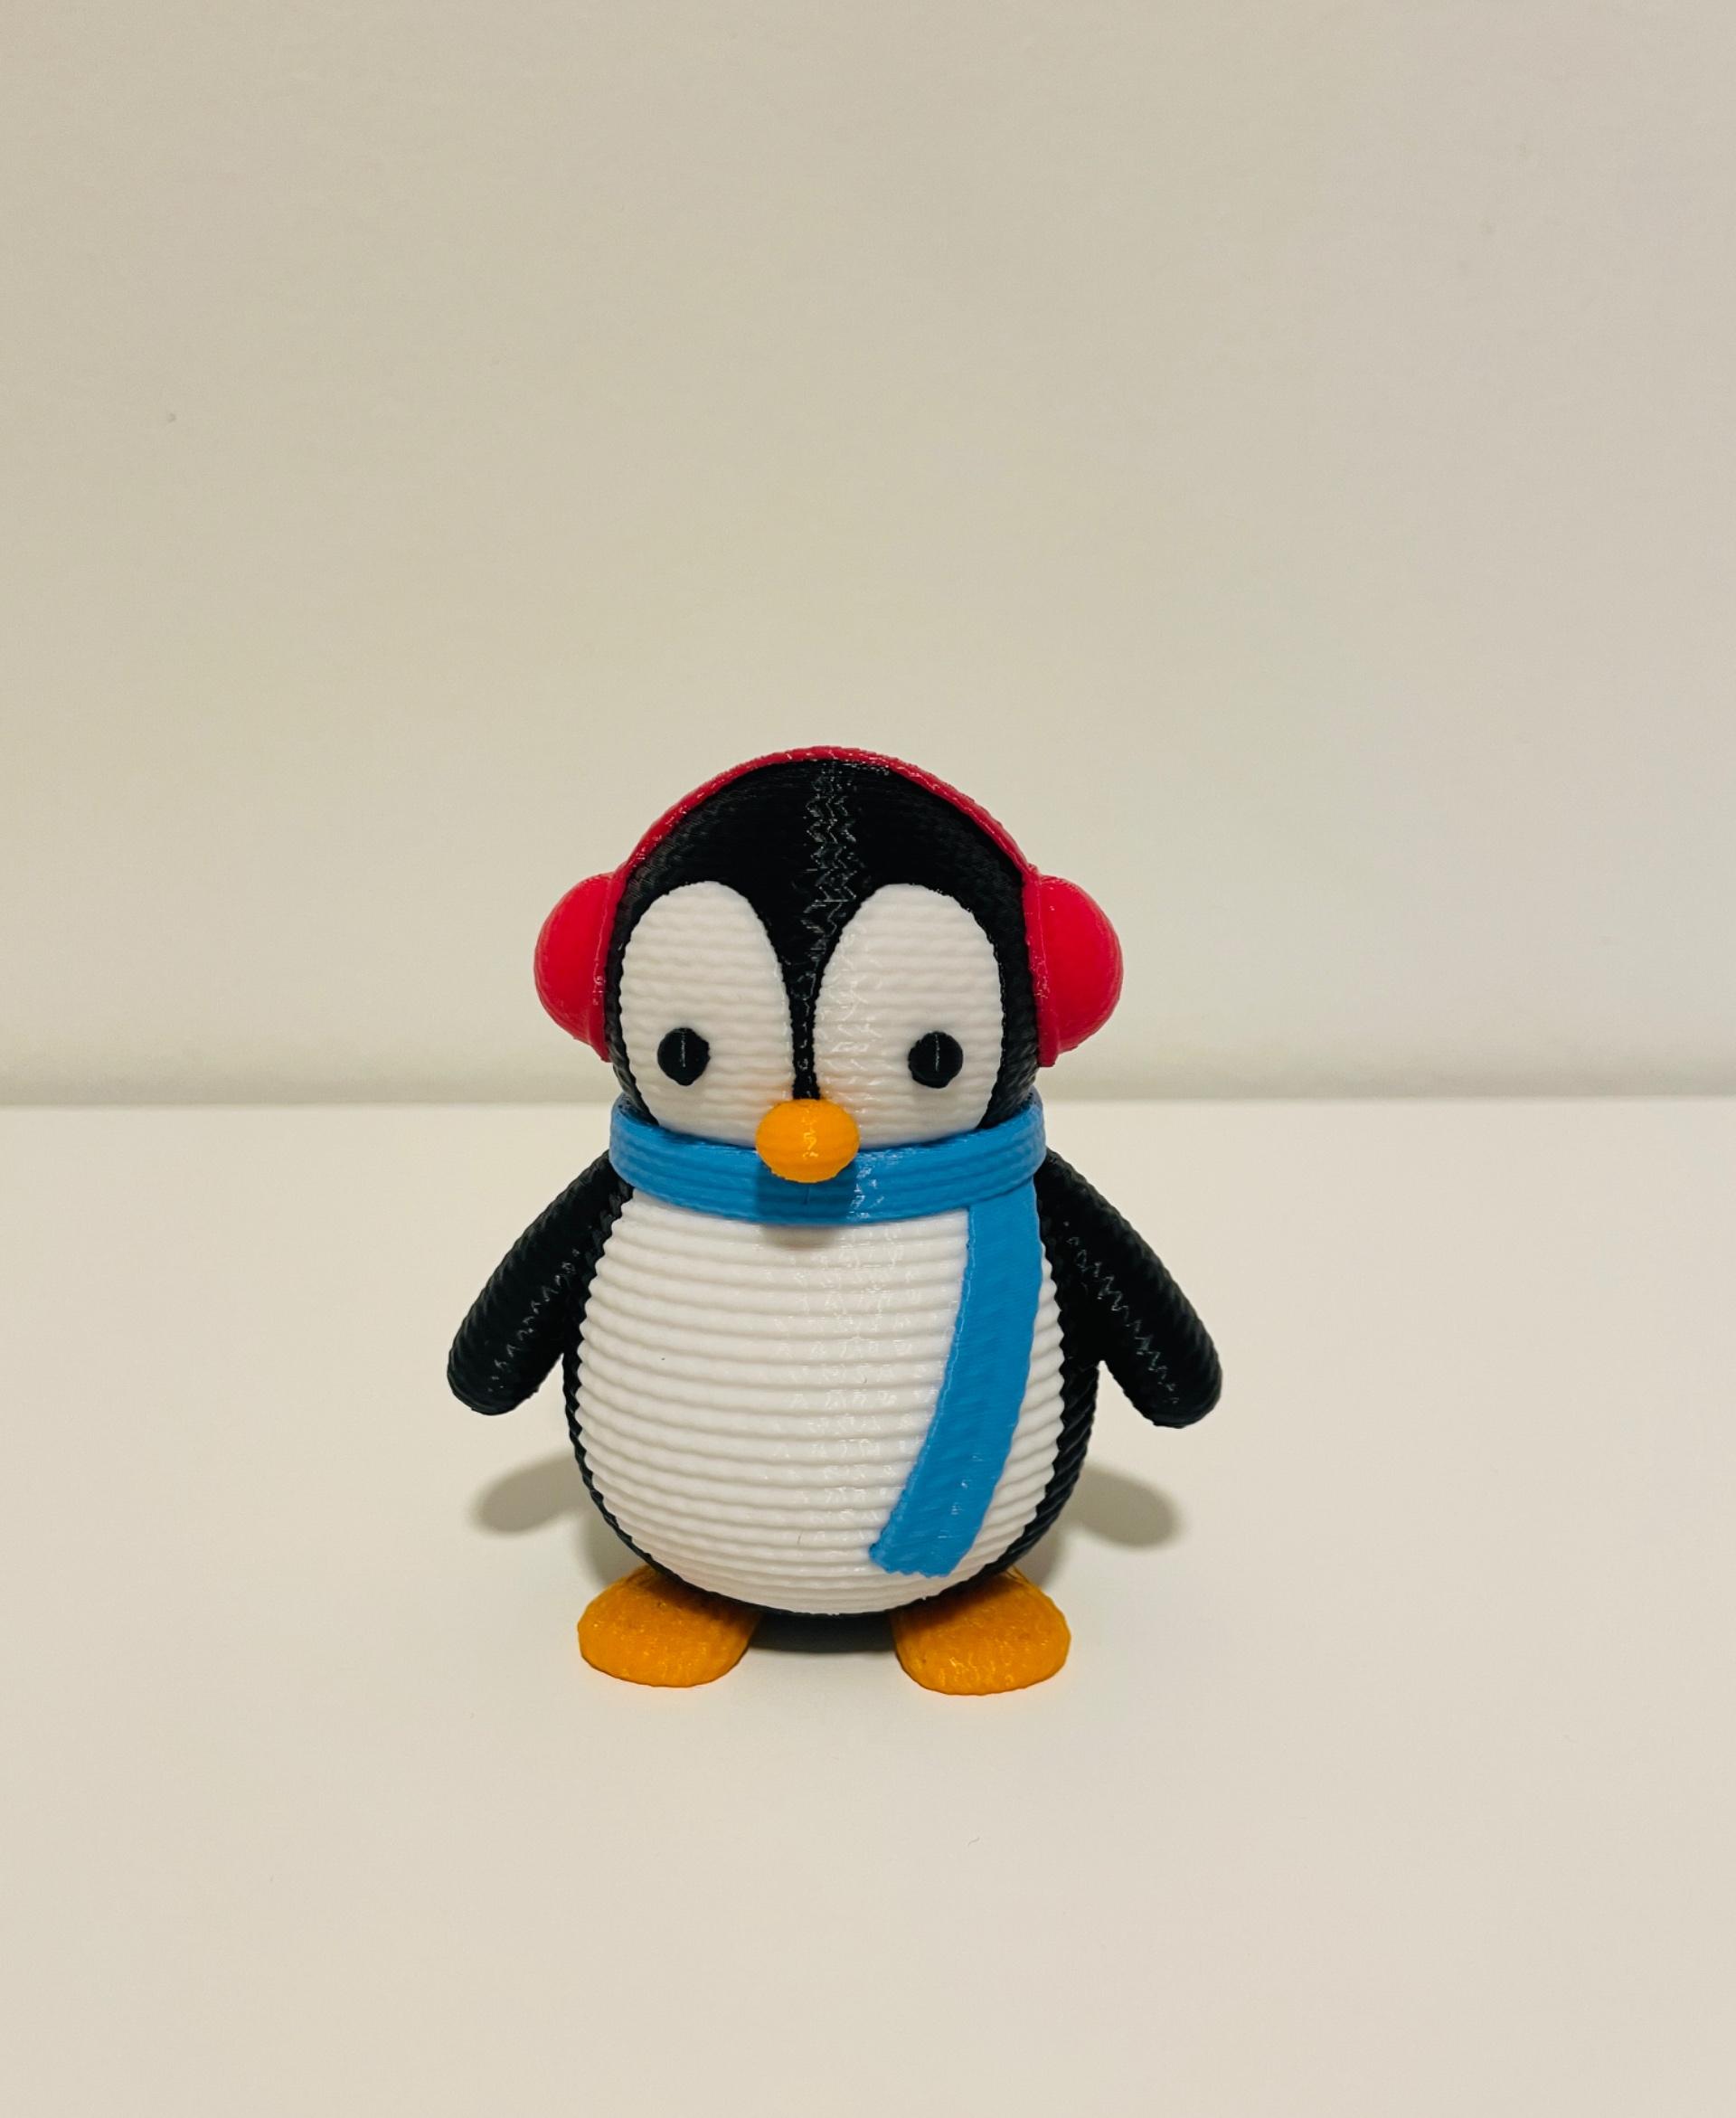 Crochet Penguin 1 - Crochet penguin 1. Thanks for sharing your design.  - 3d model